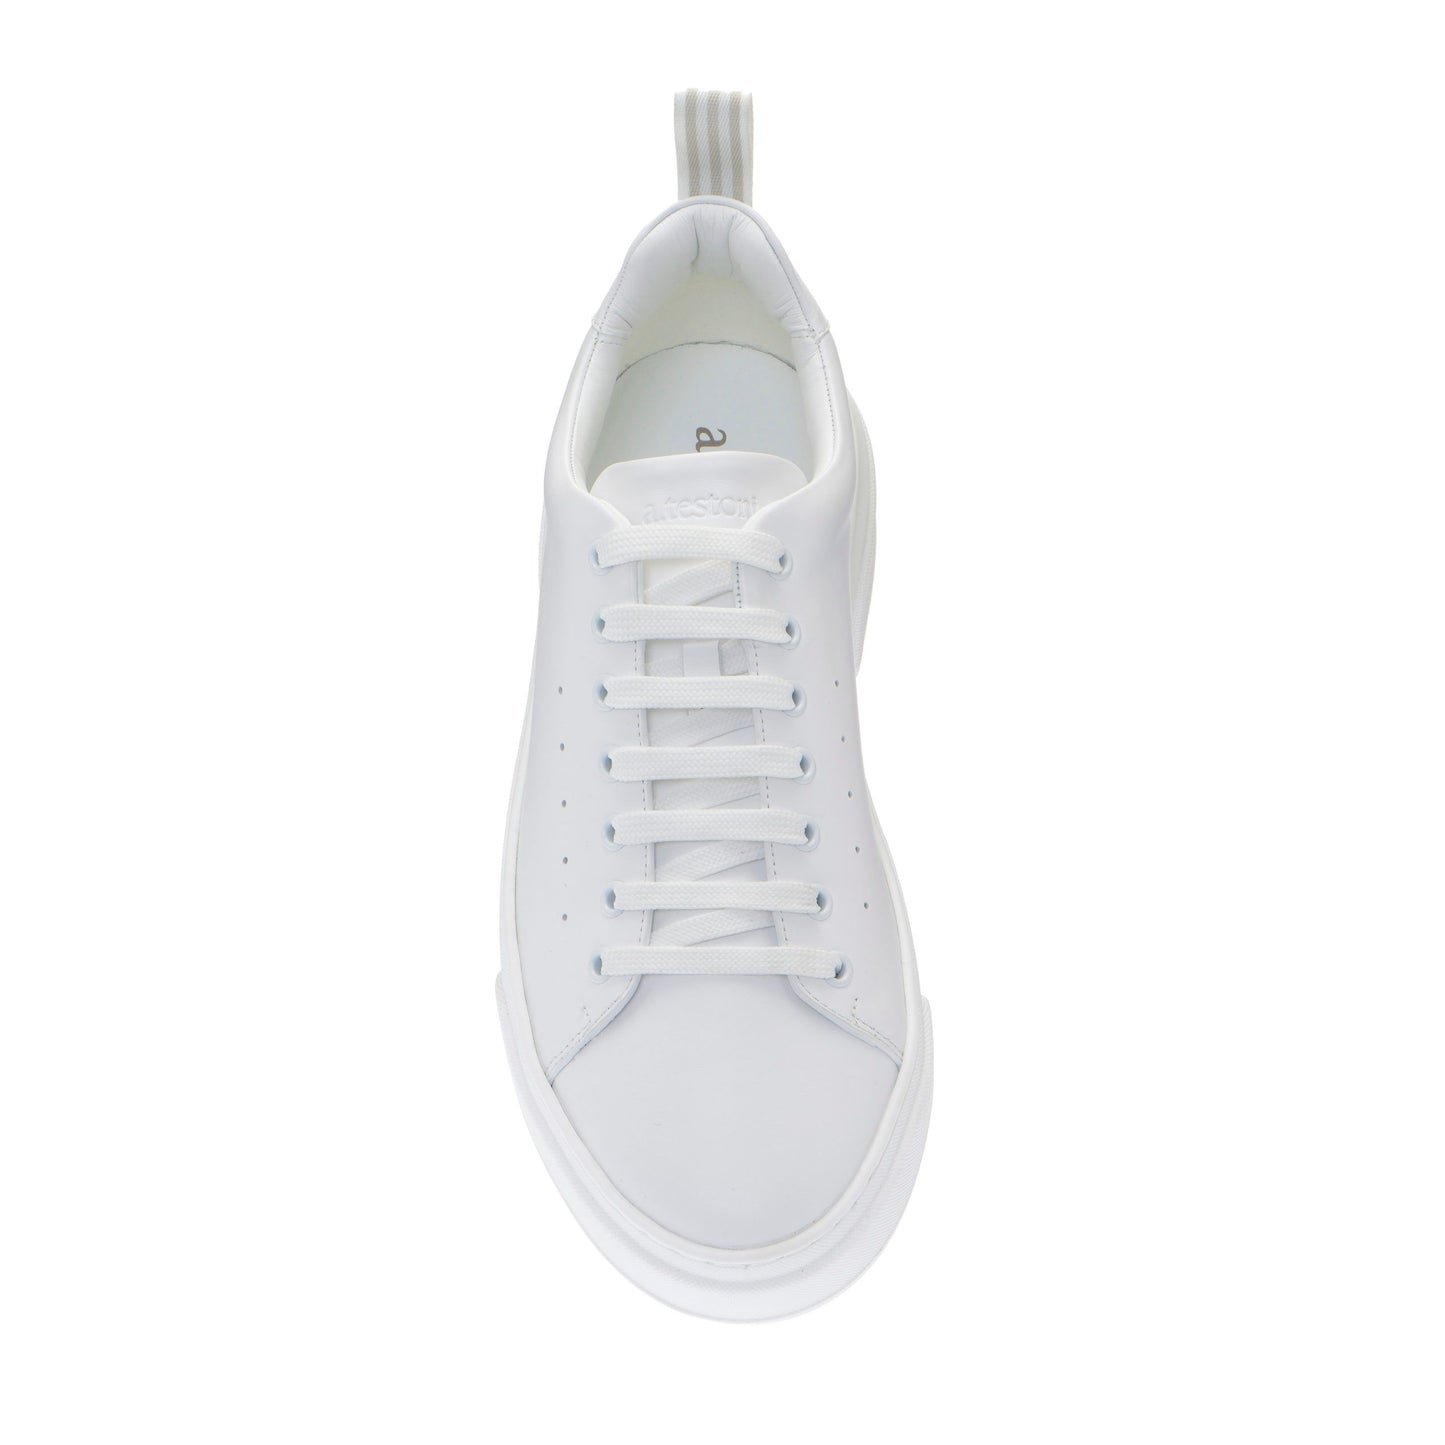 Elegant White Calfskin Men's Sneakers